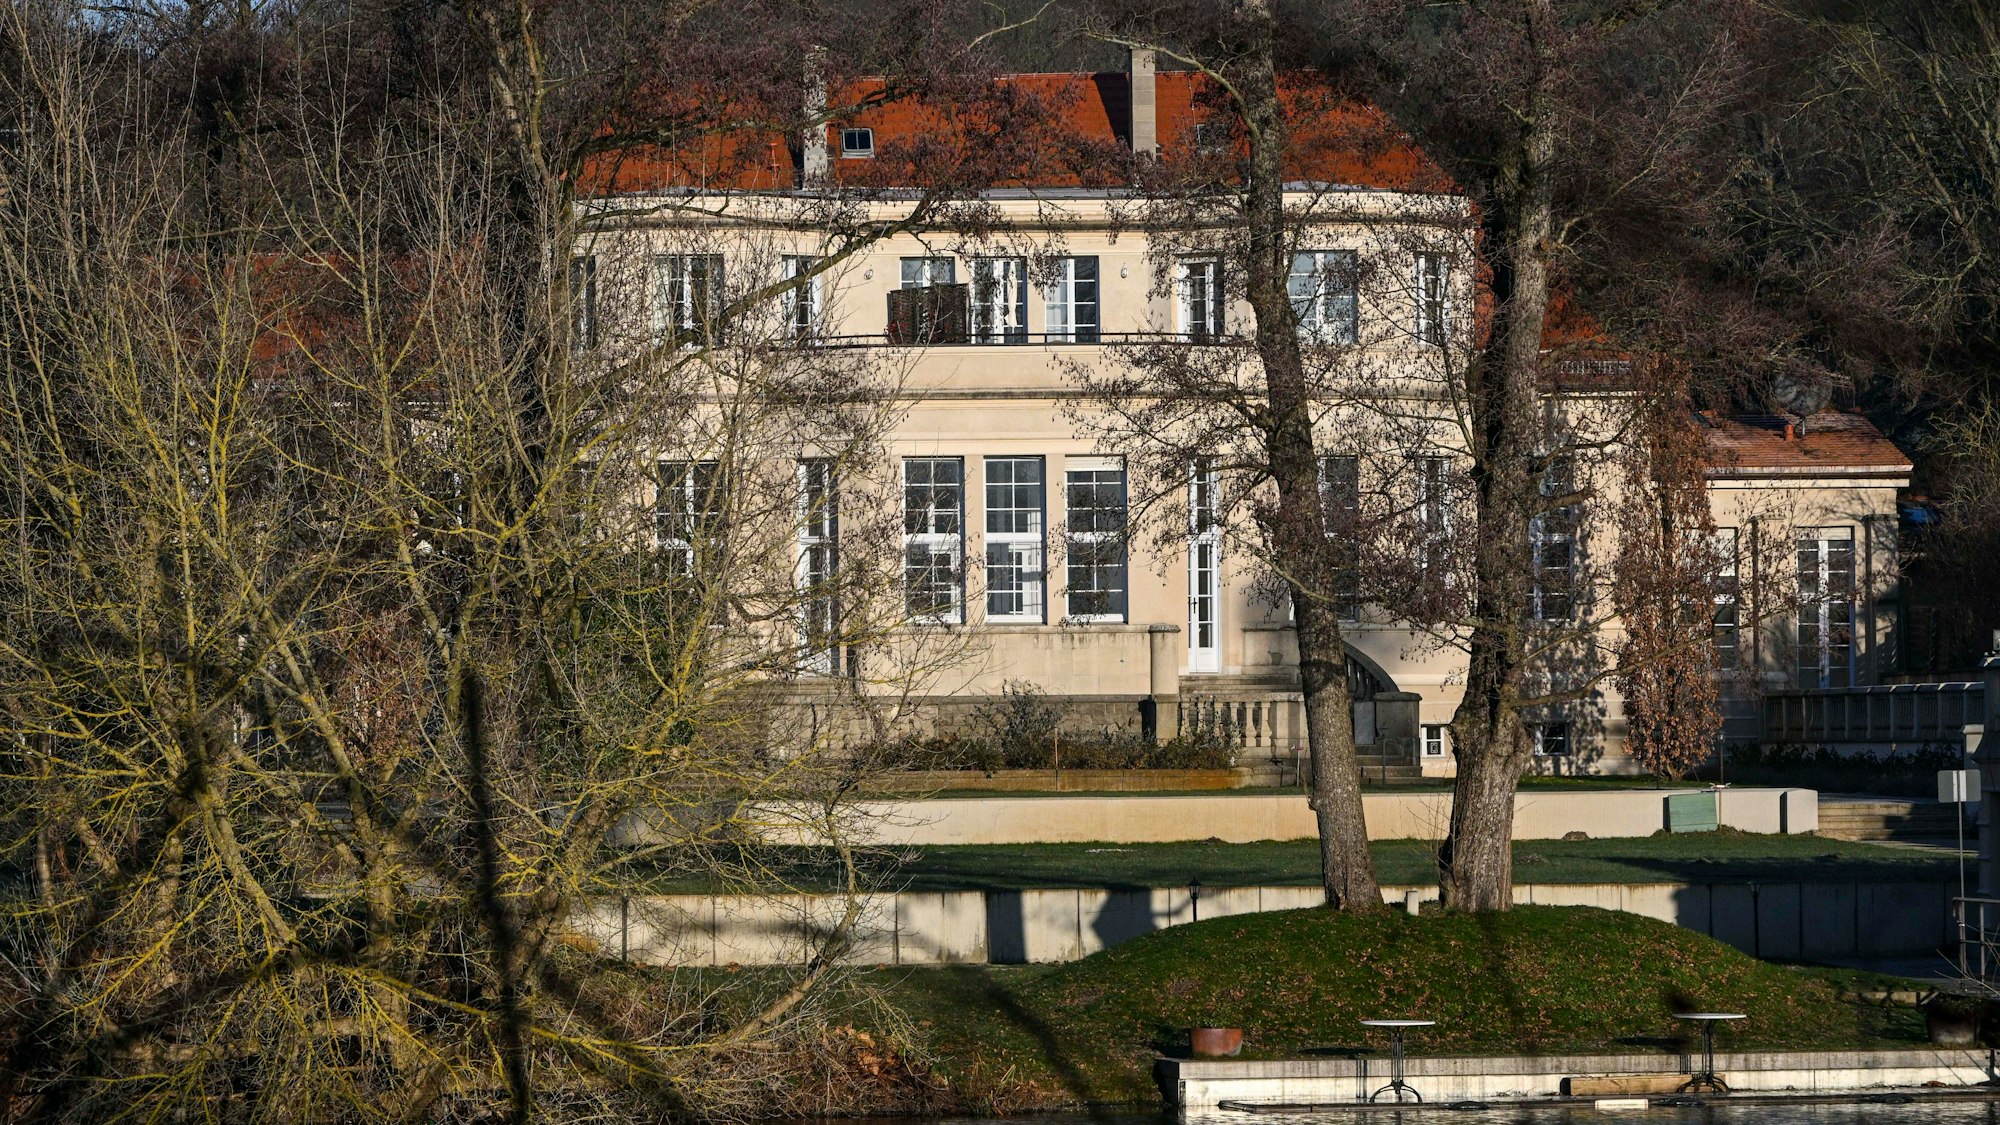 Blick auf das Gästehaus am Lehnitzsee im Potsdamer Stadtteil Neu Fahrland. Dort hatte ein Treffen radikaler Rechter stattgefunden. (Archivbild)